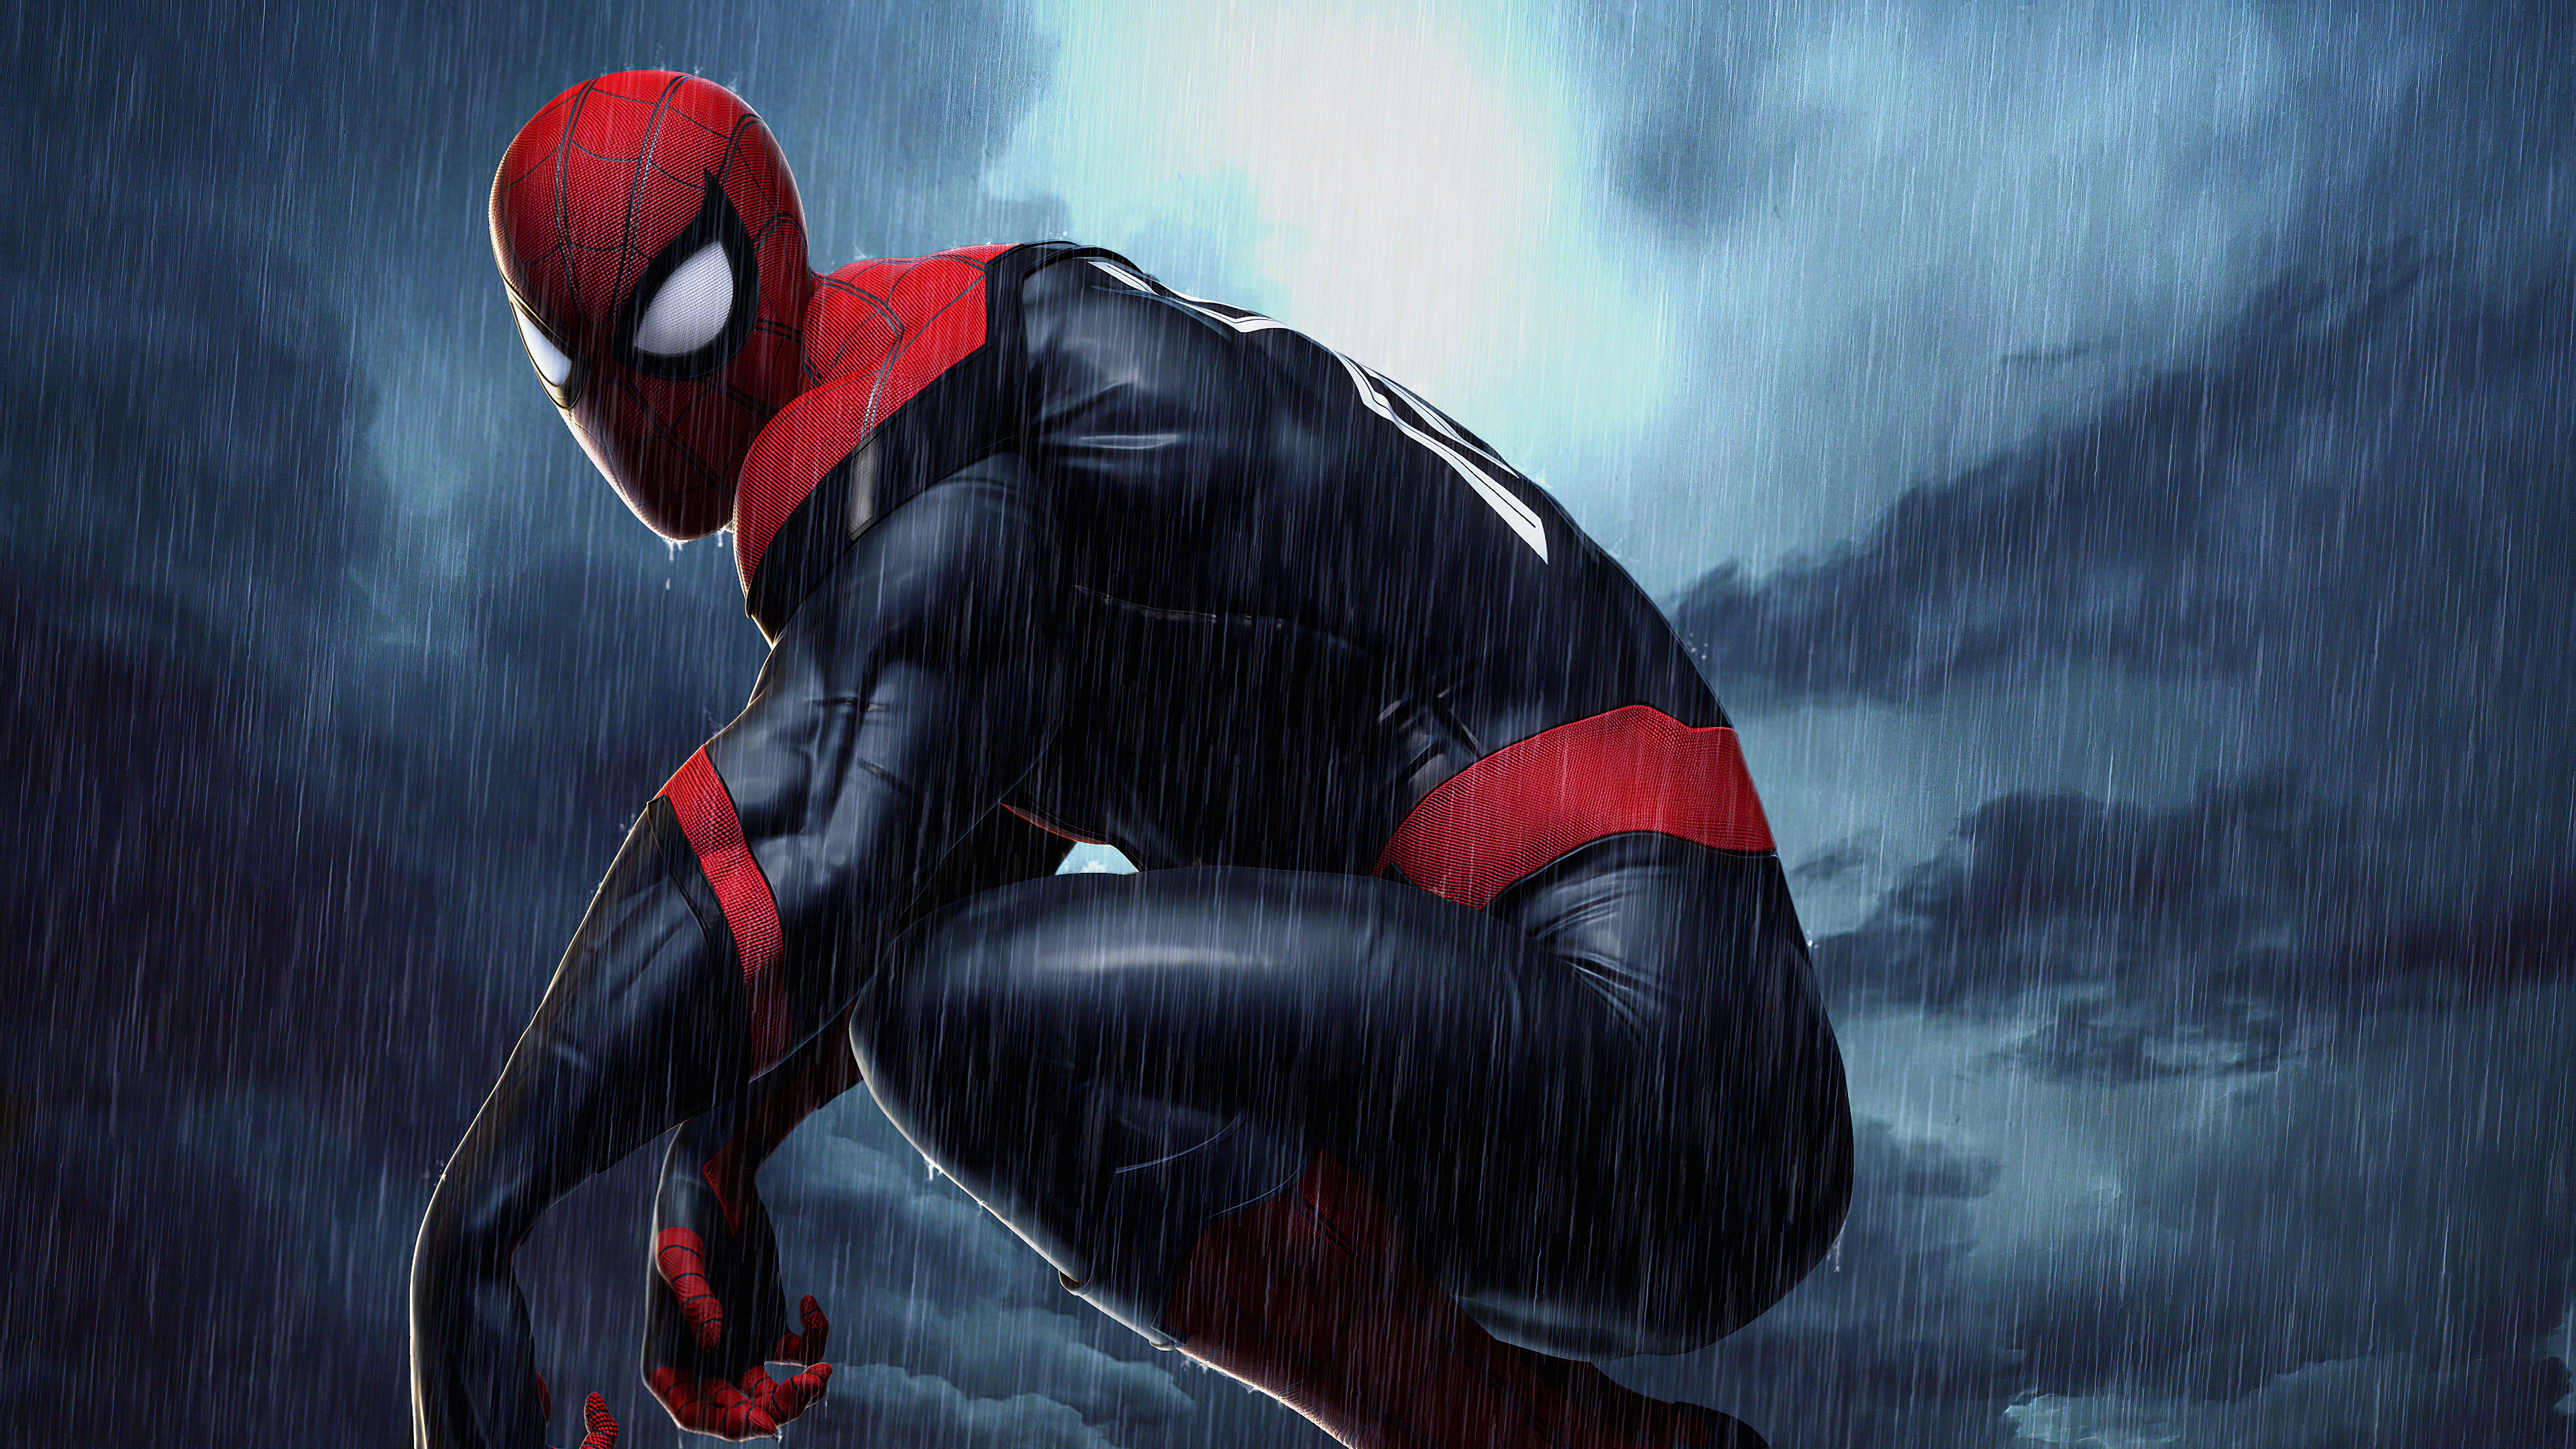 Spiderman 4k Raining, HD Superheroes, 4k Wallpapers ...